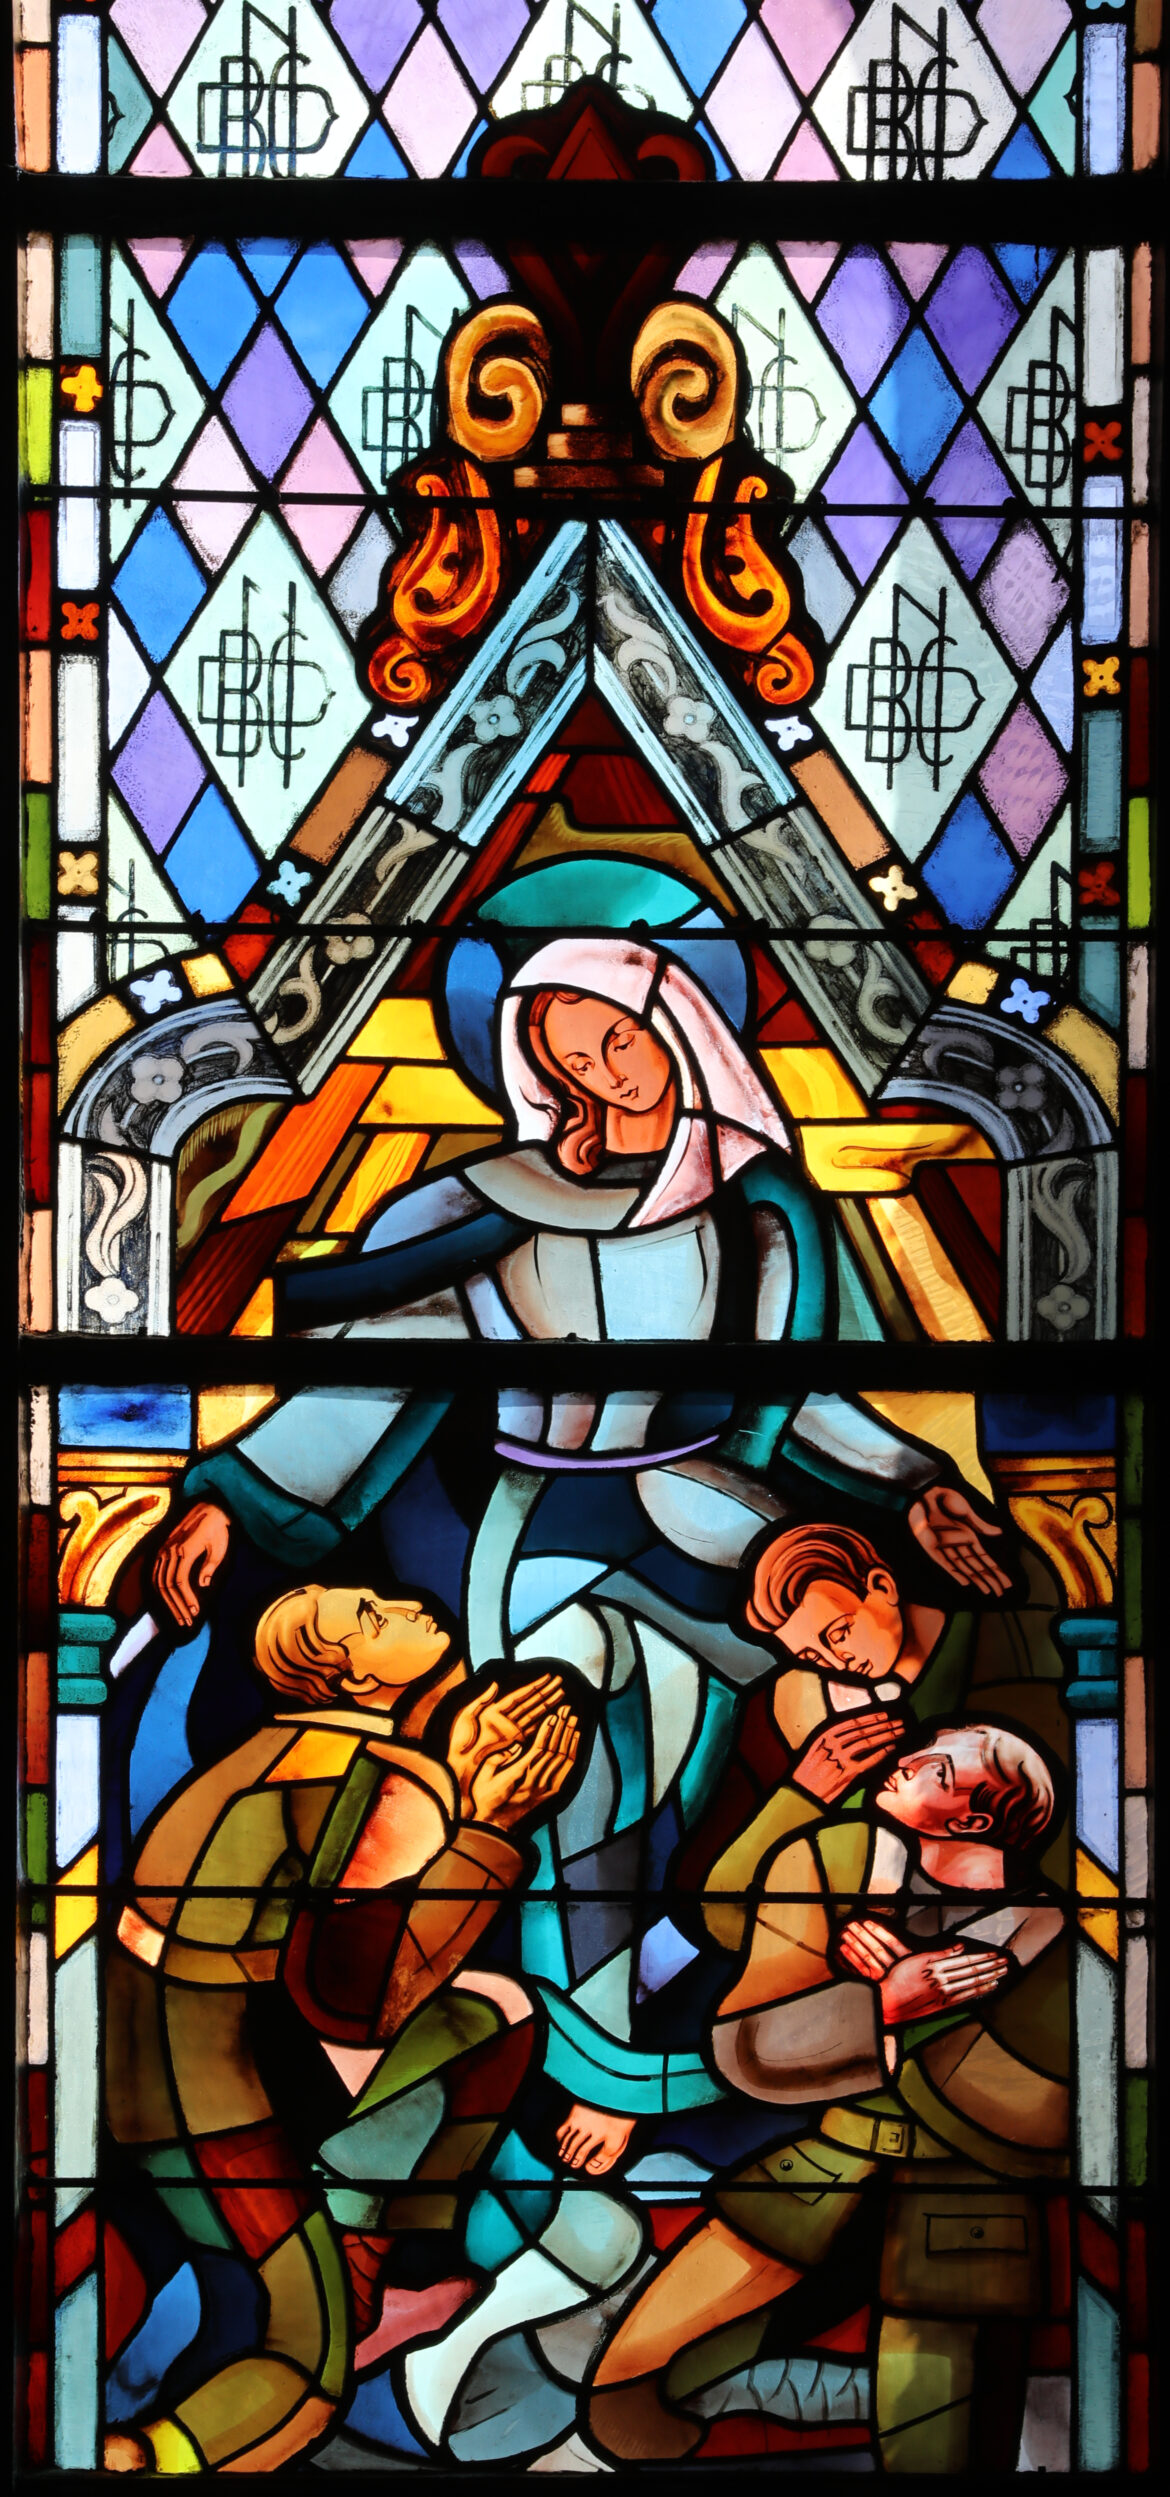 Notre-Dame-du-Bon-Conseil, lauréat du prix Pèlerin pour la restauration de ses vitraux